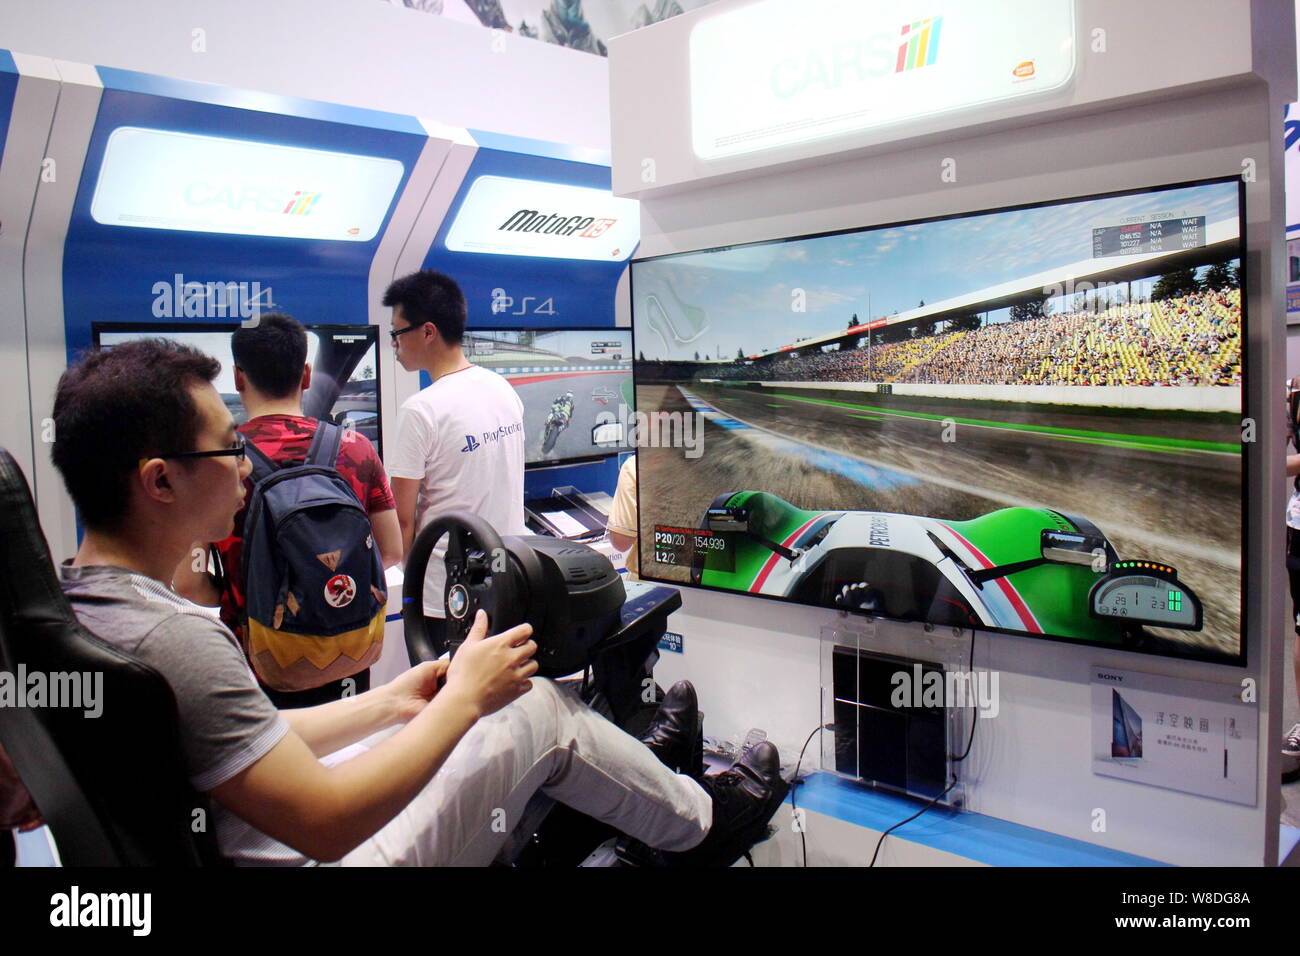 PlayStation 4 Games - Racing